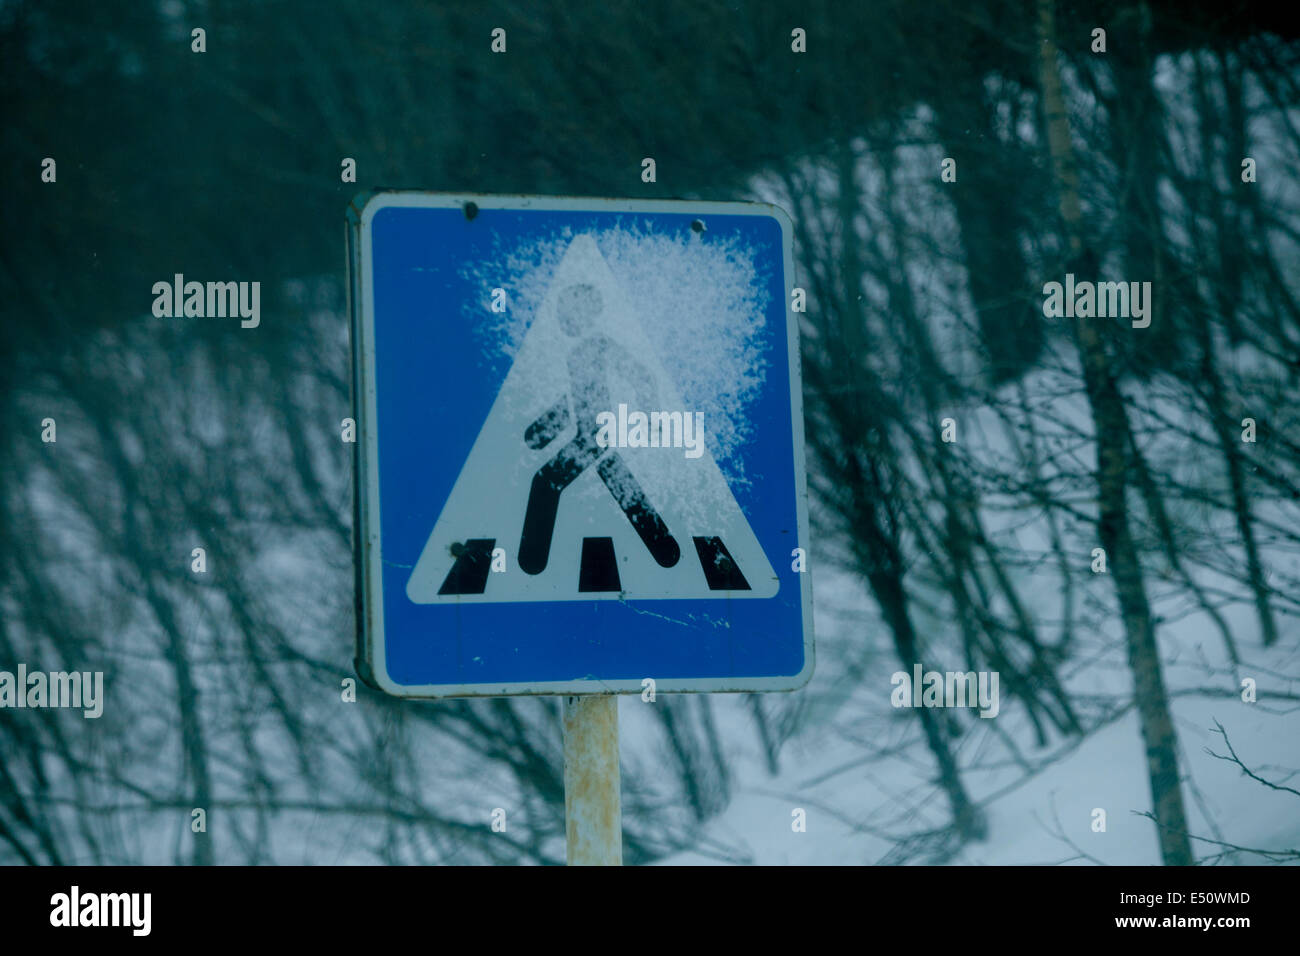 Fédération signe piétonne route de glace dangereuse snow Banque D'Images